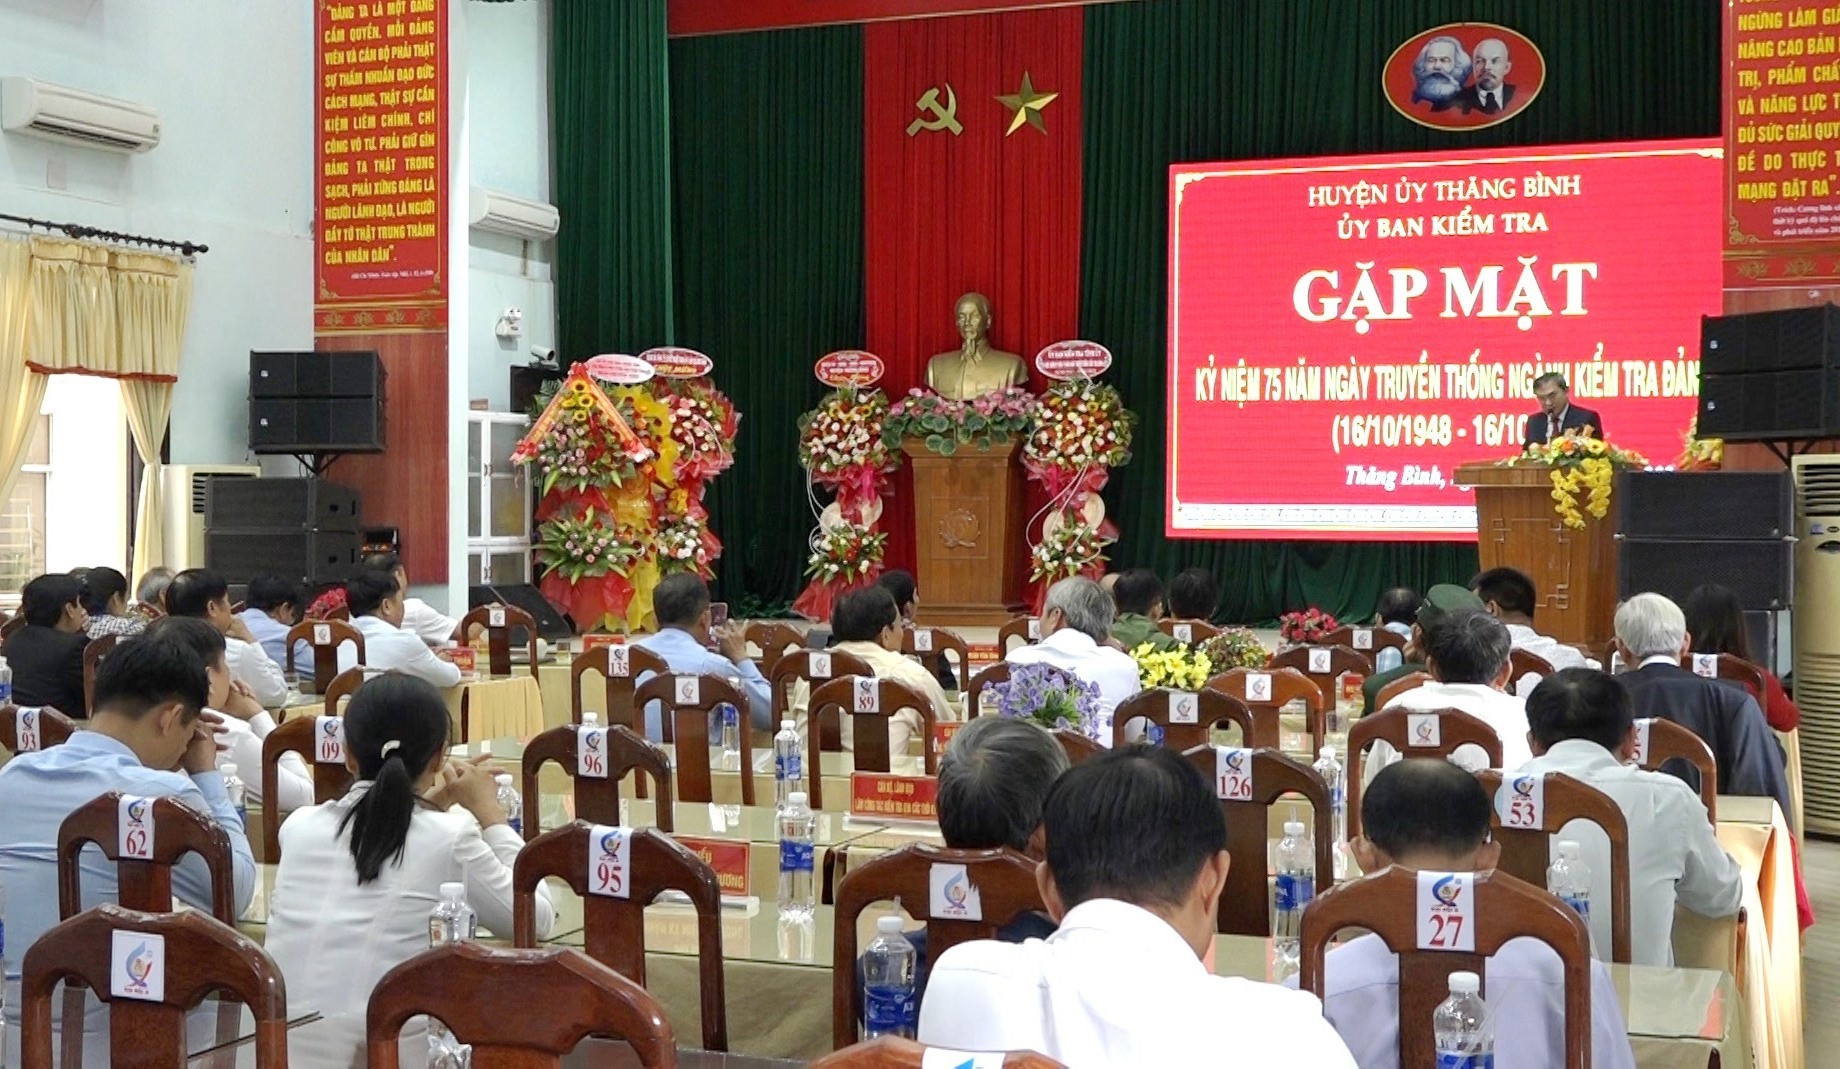 Quang cảnh buổi gặp mặt kỷ niệm 75 năm ngày truyền thống Ngành kiểm tra Đảng tại Thăng Bình. Ảnh: T.N